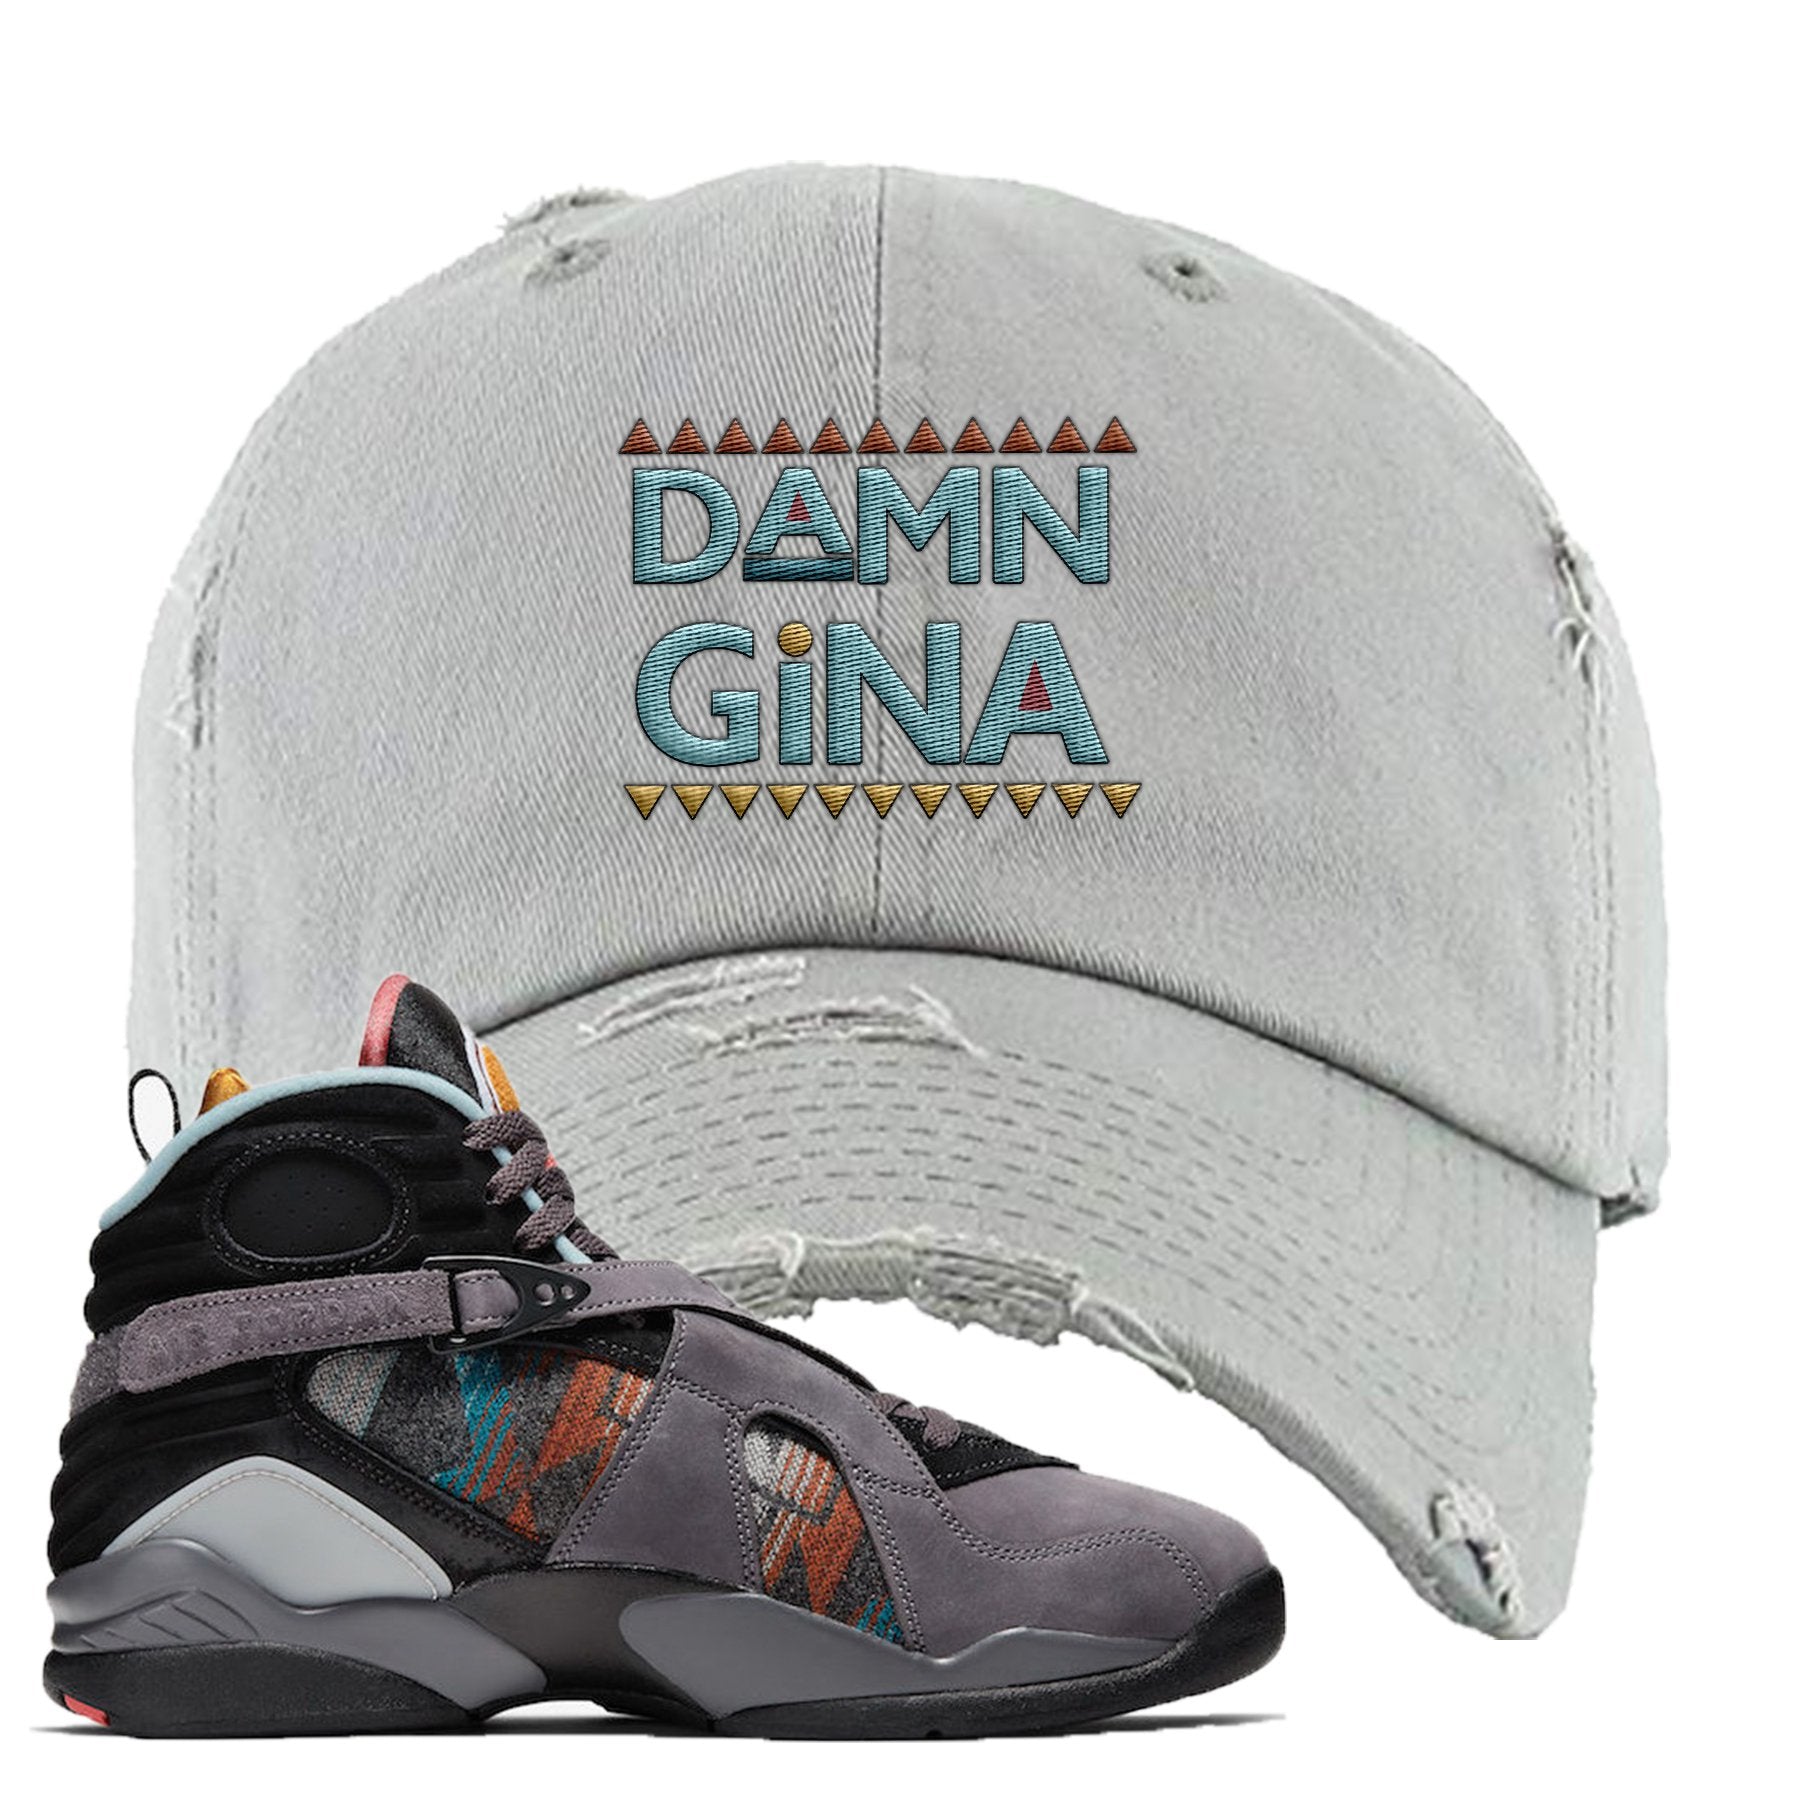 Jordan 8 N7 Pendleton Damn Gina Light Gray Sneaker Hook Up Distressed Dad Hat